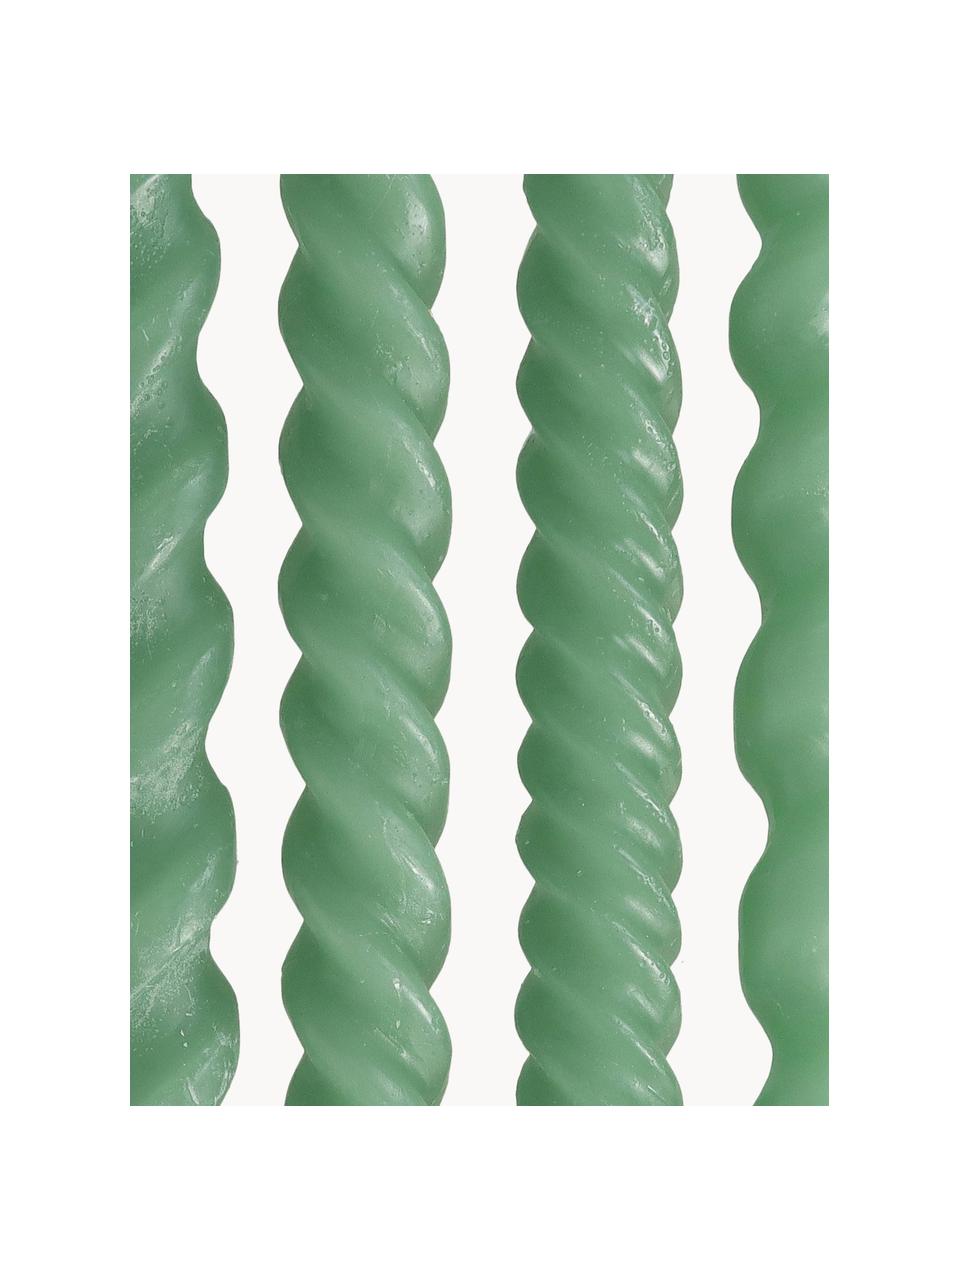 Stabkerzen Spiral, 4er-Set, Wachs, Grün, H 31 cm